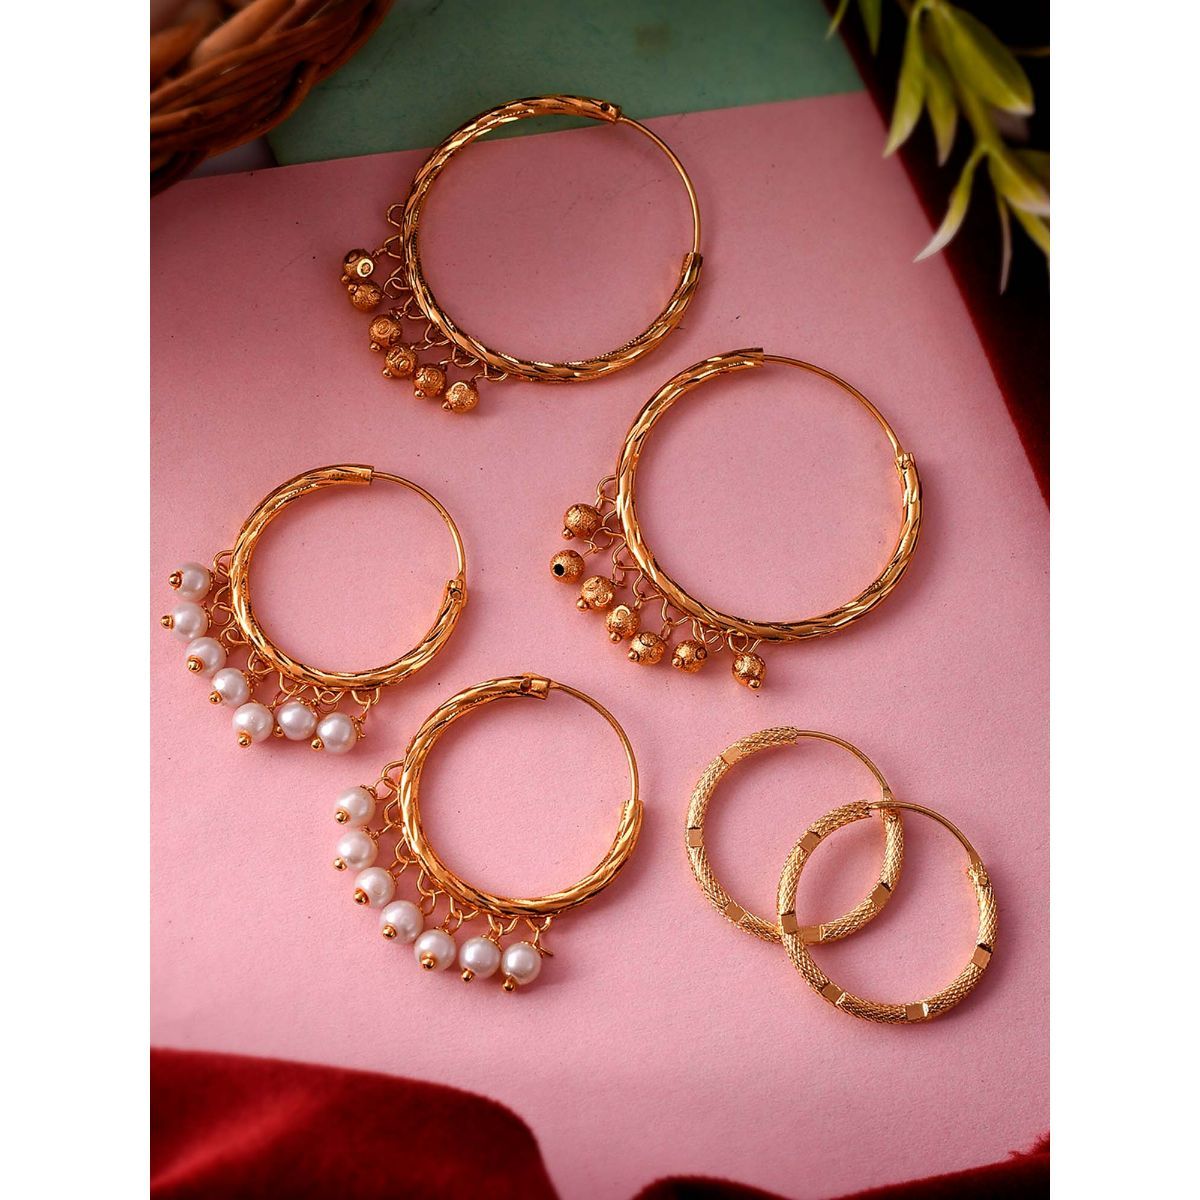 Buy Red Hoop Earrings Gold Hoop Earrings for Women Gold Online in India   Etsy